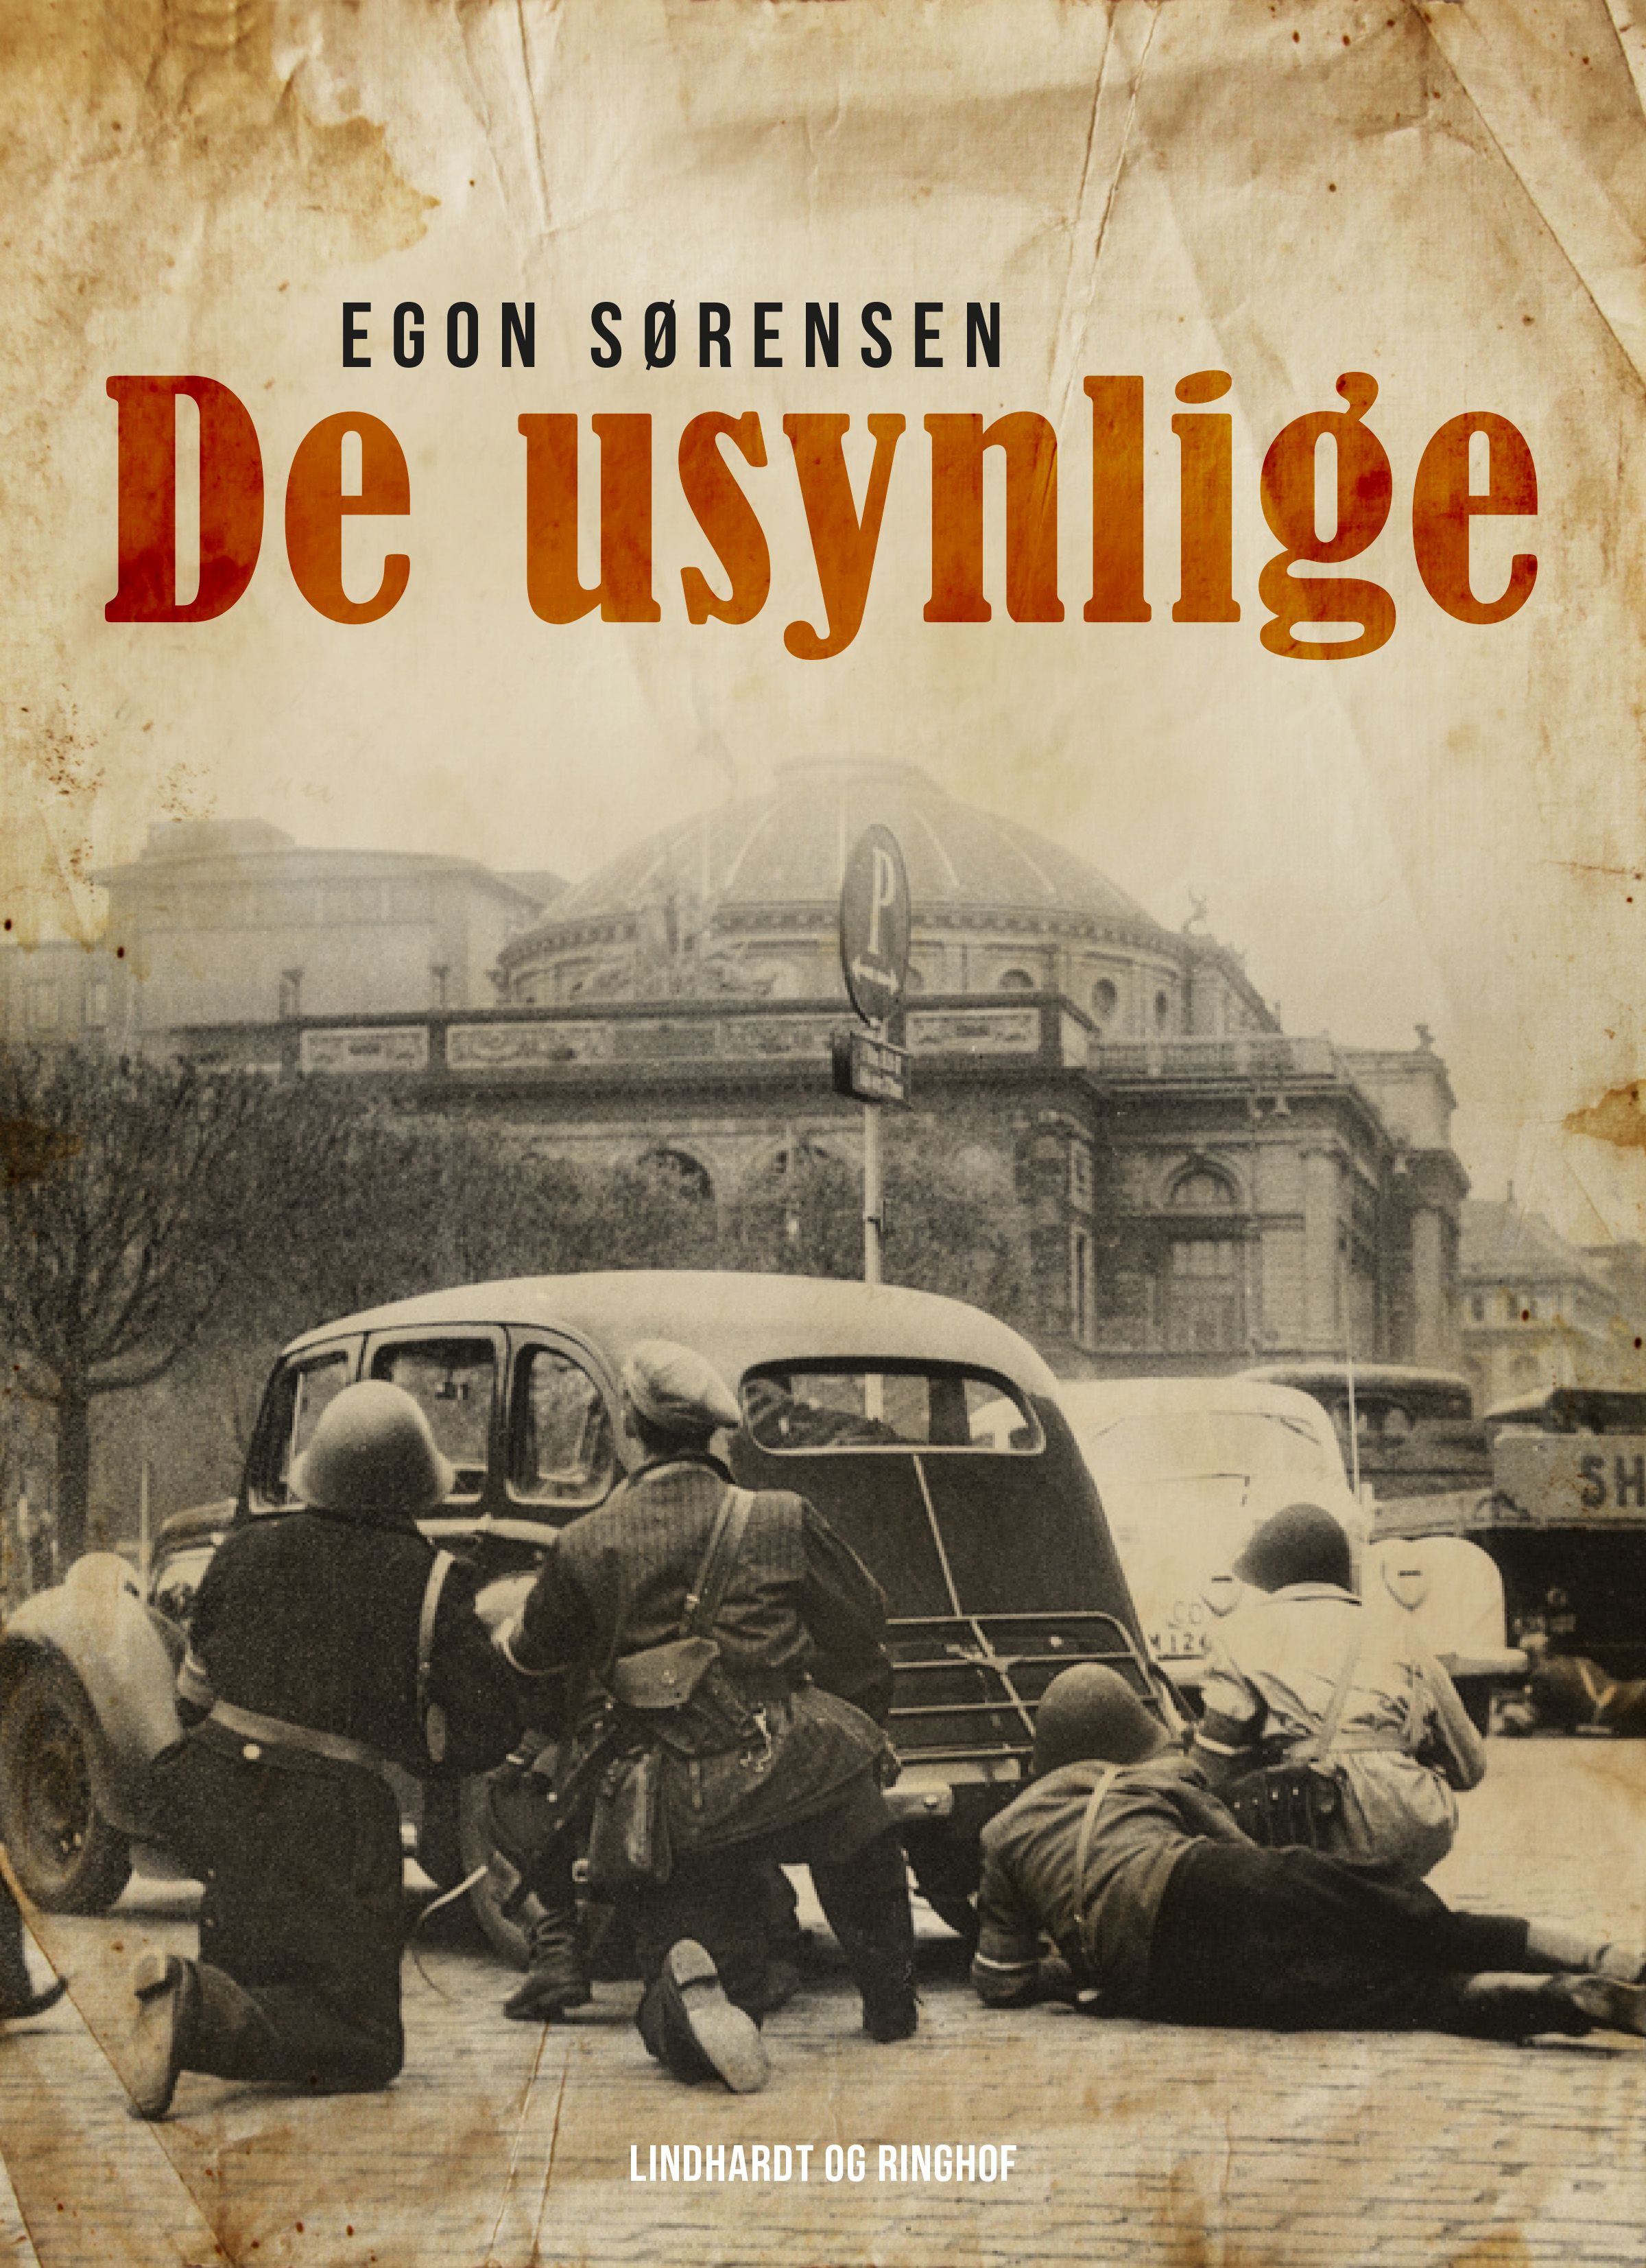 De usynlige, audiobook by Egon Sørensen